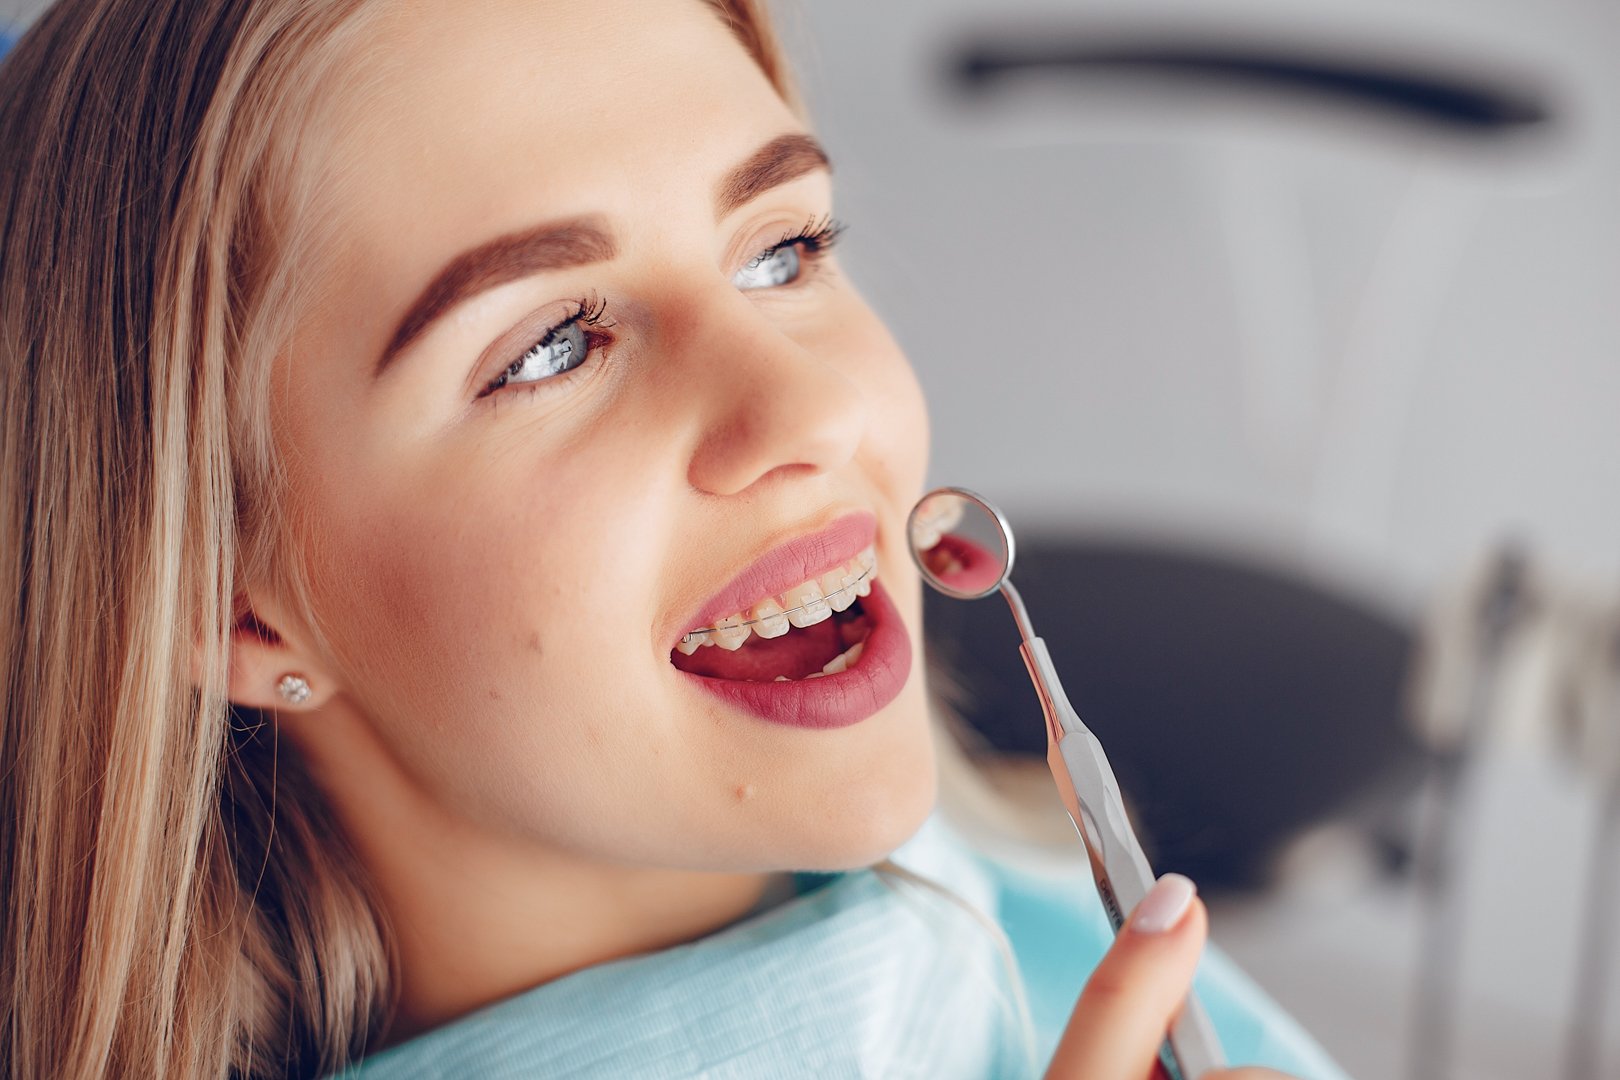 Gutiere dentare sau aparat dentar fix? Ce alegere este potrivită pentru tine? At&acirc;t gutierele dentare c&acirc;t și aparatul dentar fix prezintă avantaje și dezavantaje, iar alegerea depinde de nevoile individuale ale pacientului. 

Te așteptăm l